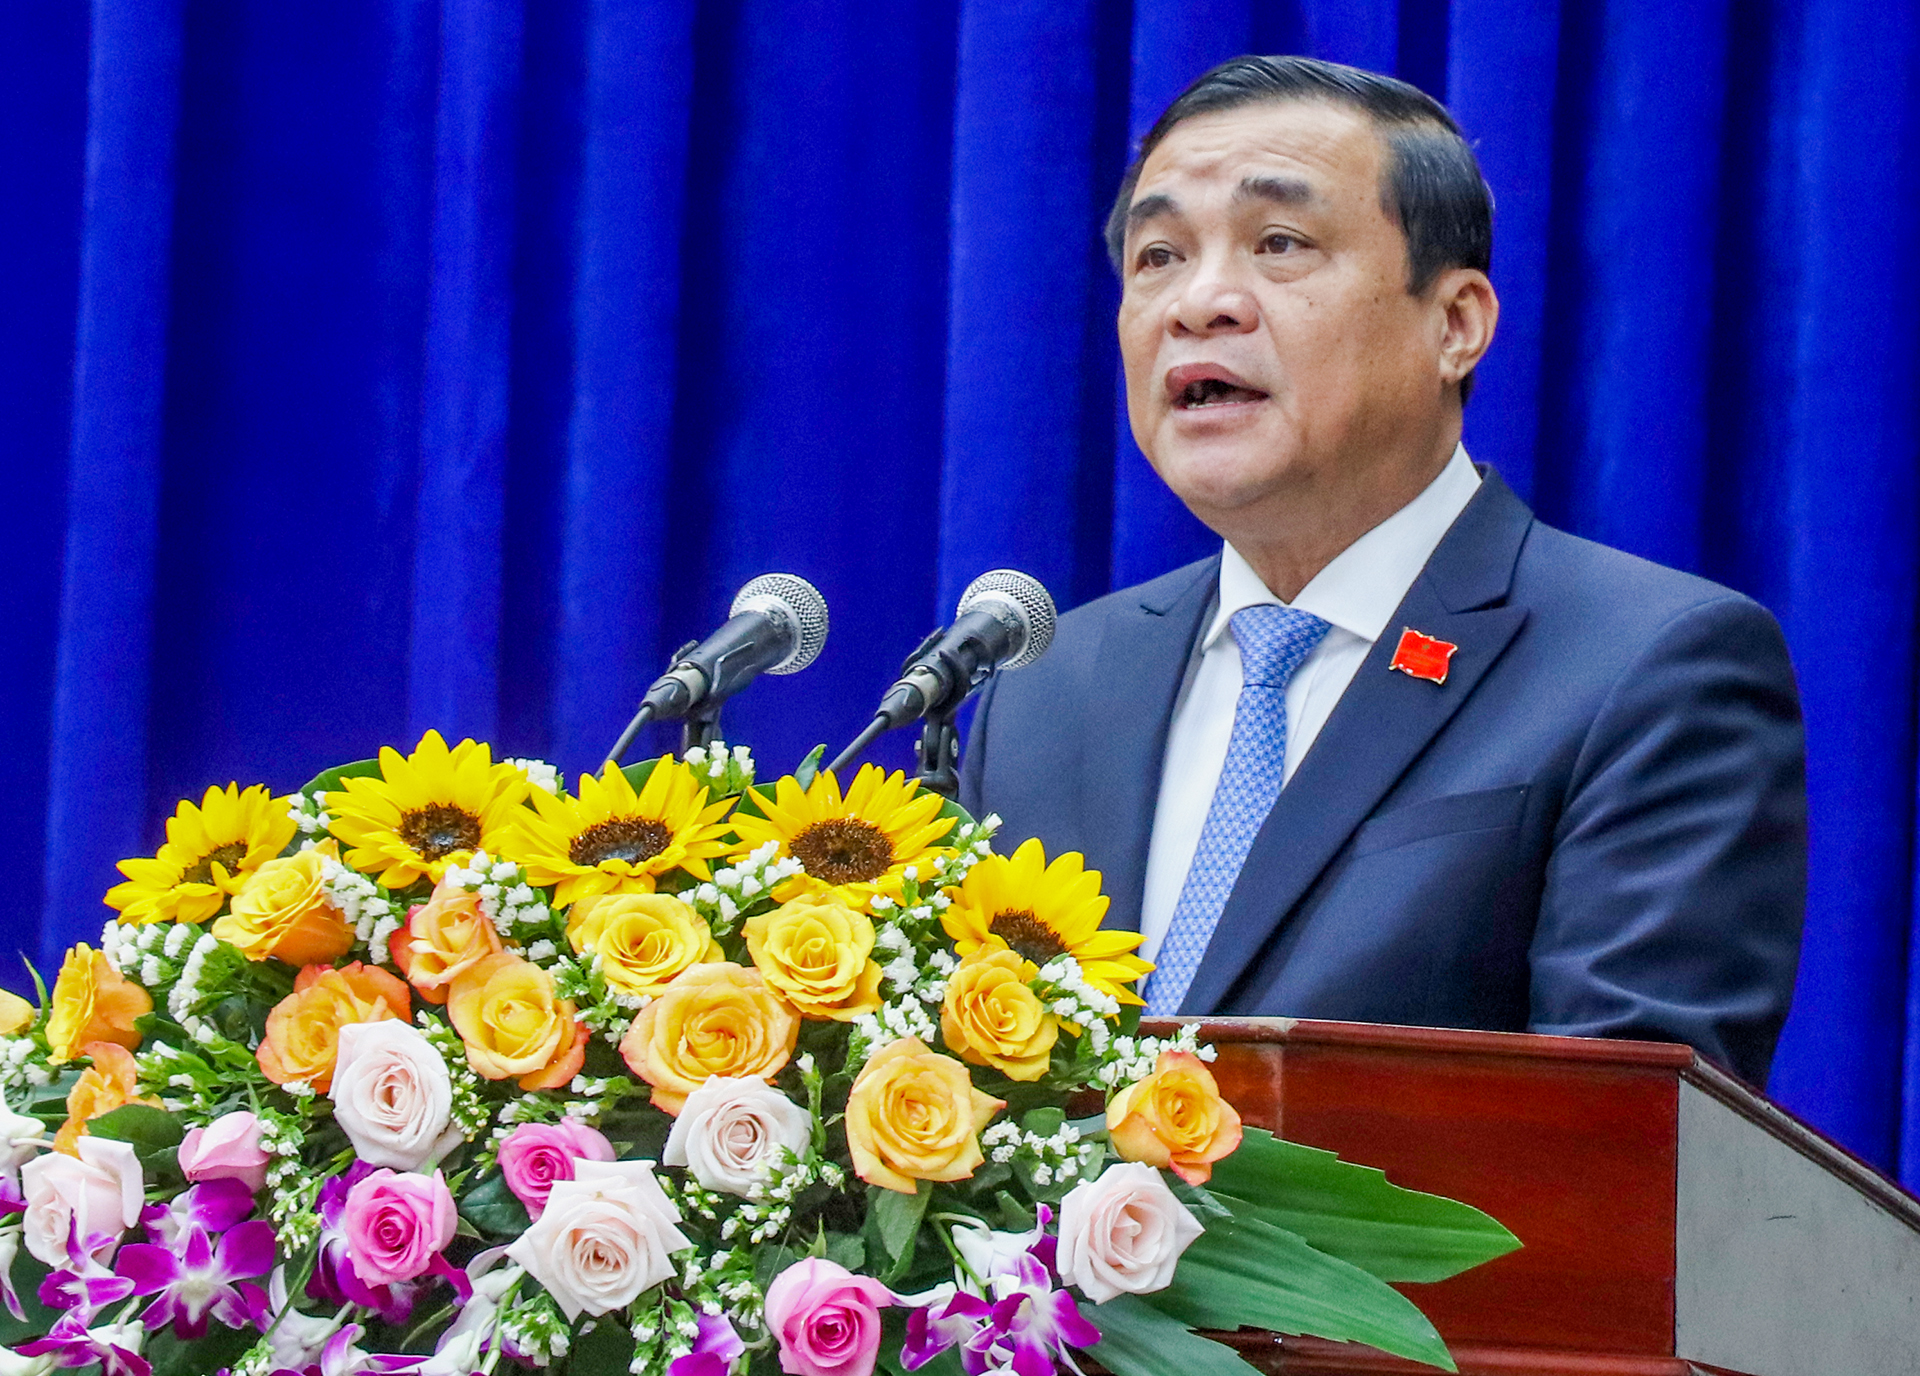 Bí thư Tỉnh ủy Quảng Nam Phan Việt Cường xin nghỉ hưu vì lý do sức khỏe - Ảnh 1.